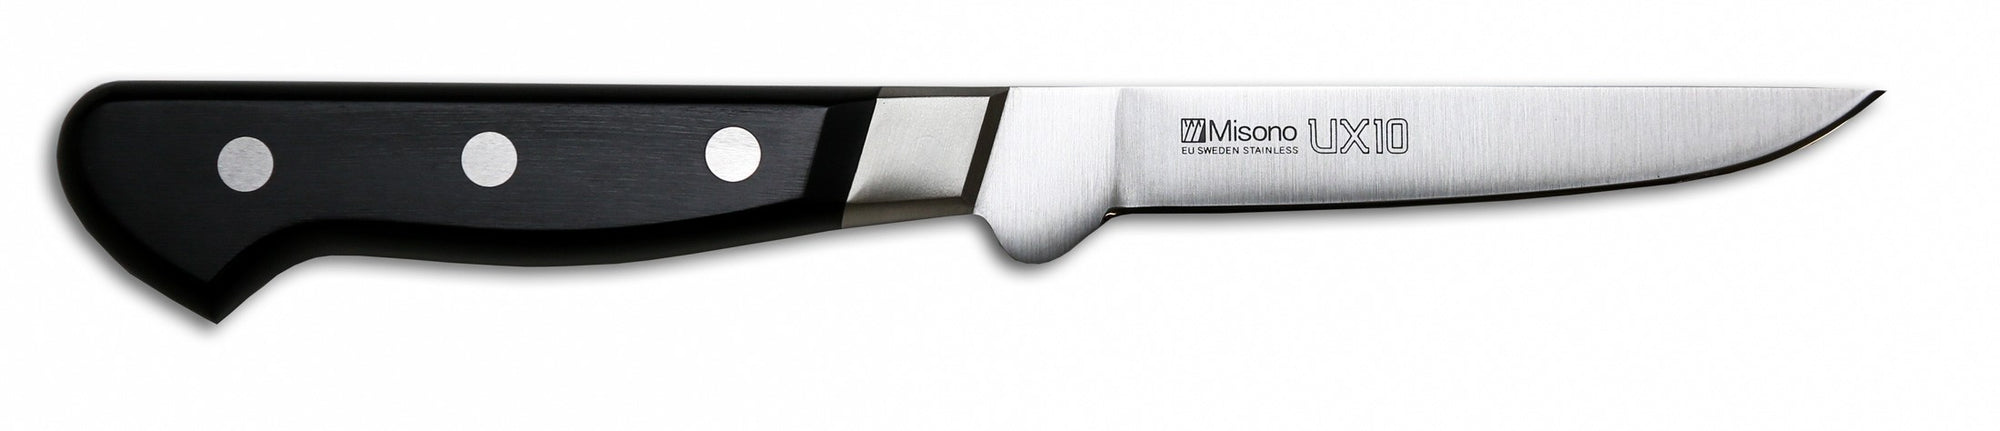 Couteau à désosser de style européen Misono UX10, 4,3 pouces (110 mm) - 743